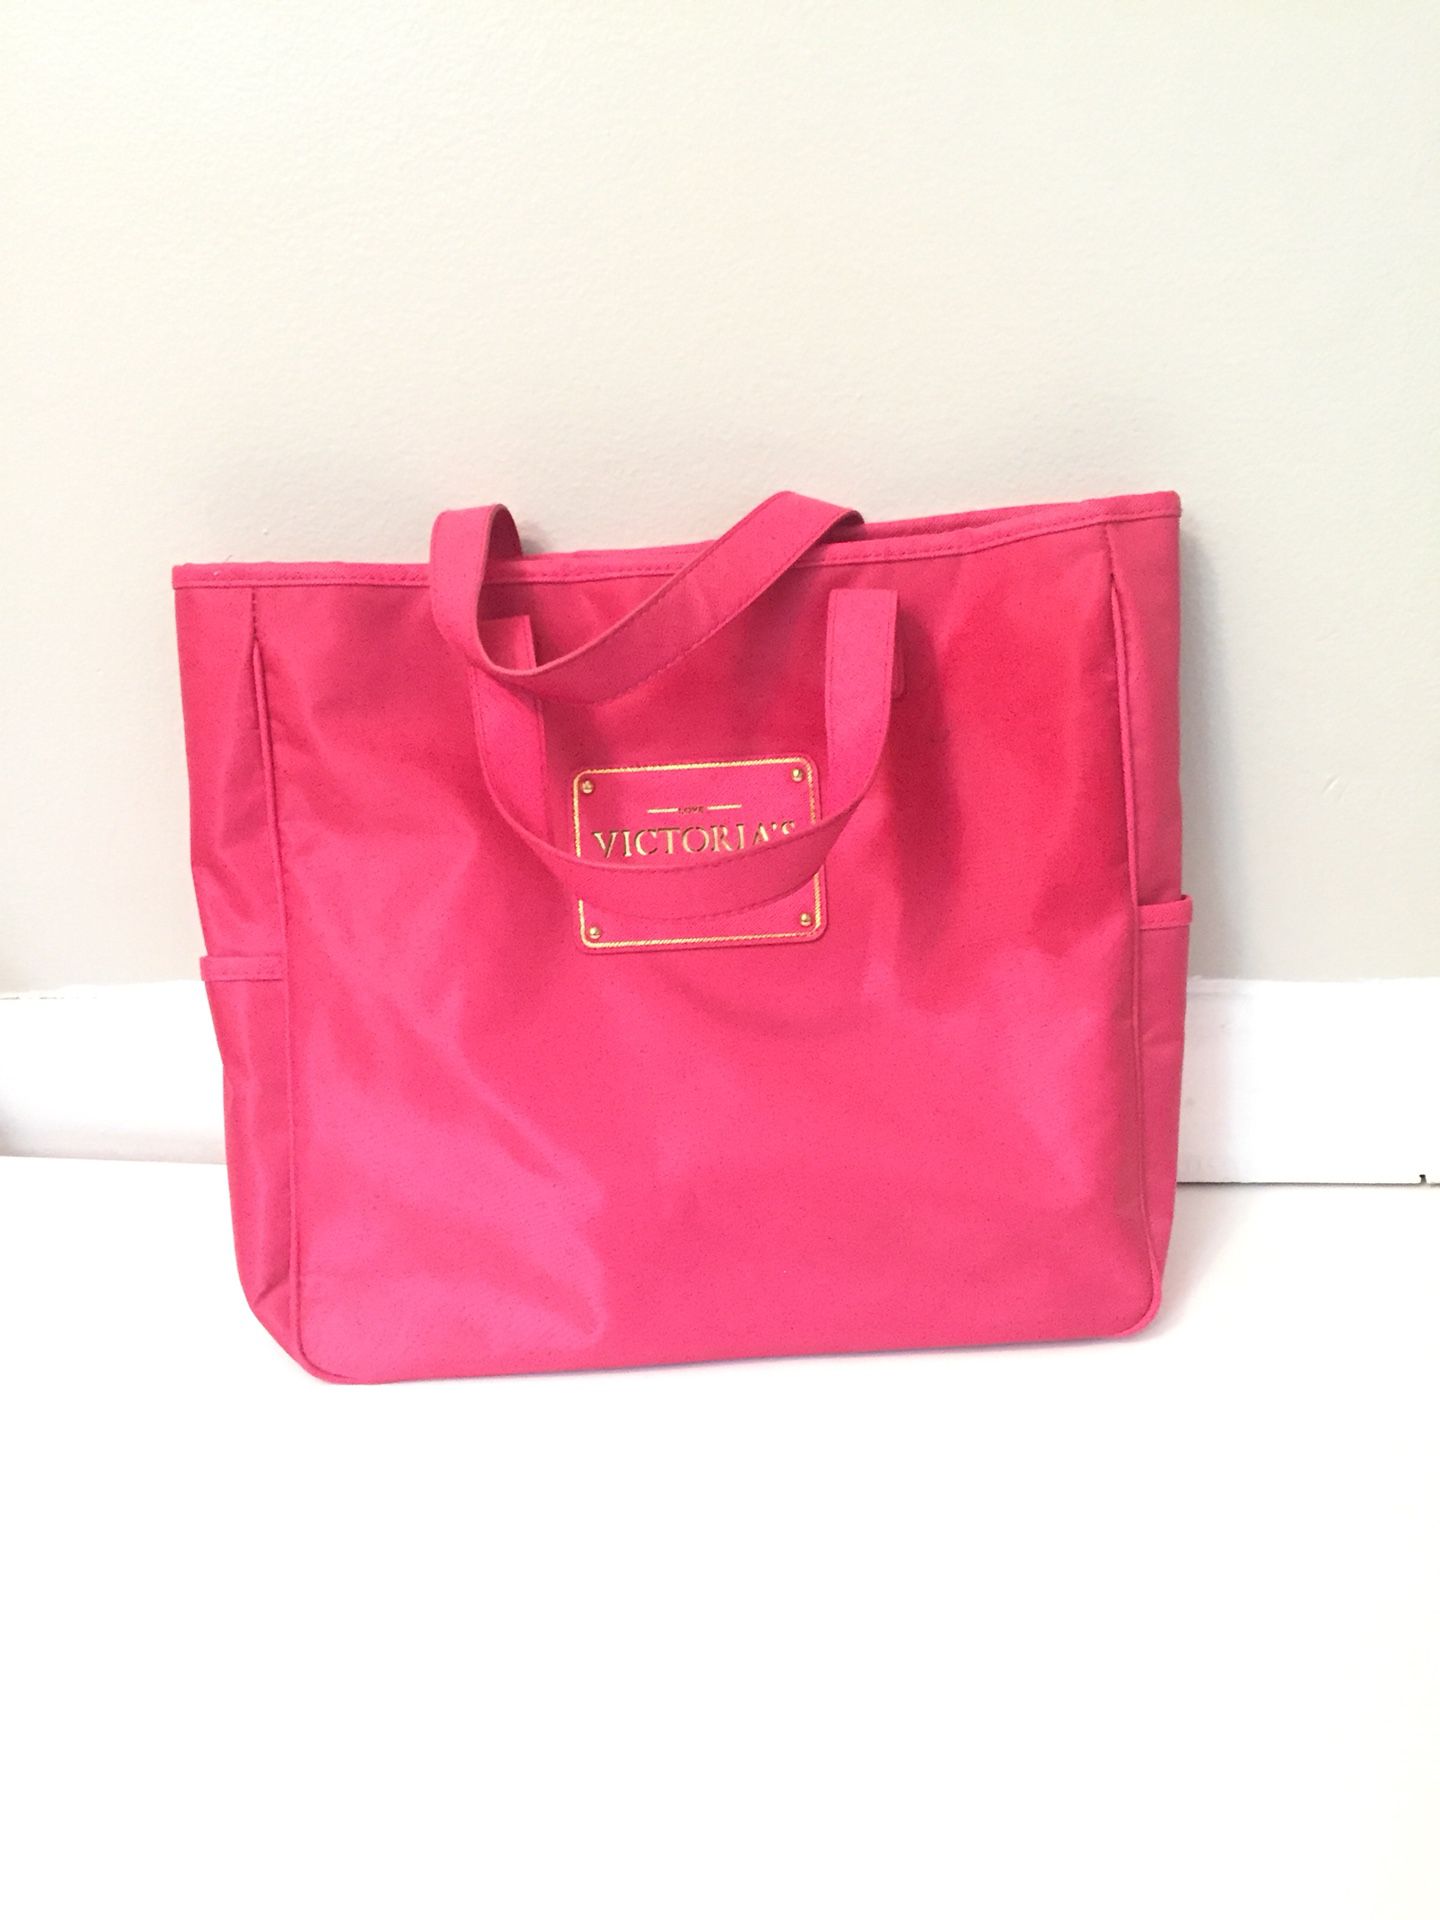 Victoria's Secret, Bags, Victorias Secret Sequin Tote Bag With Wristlet